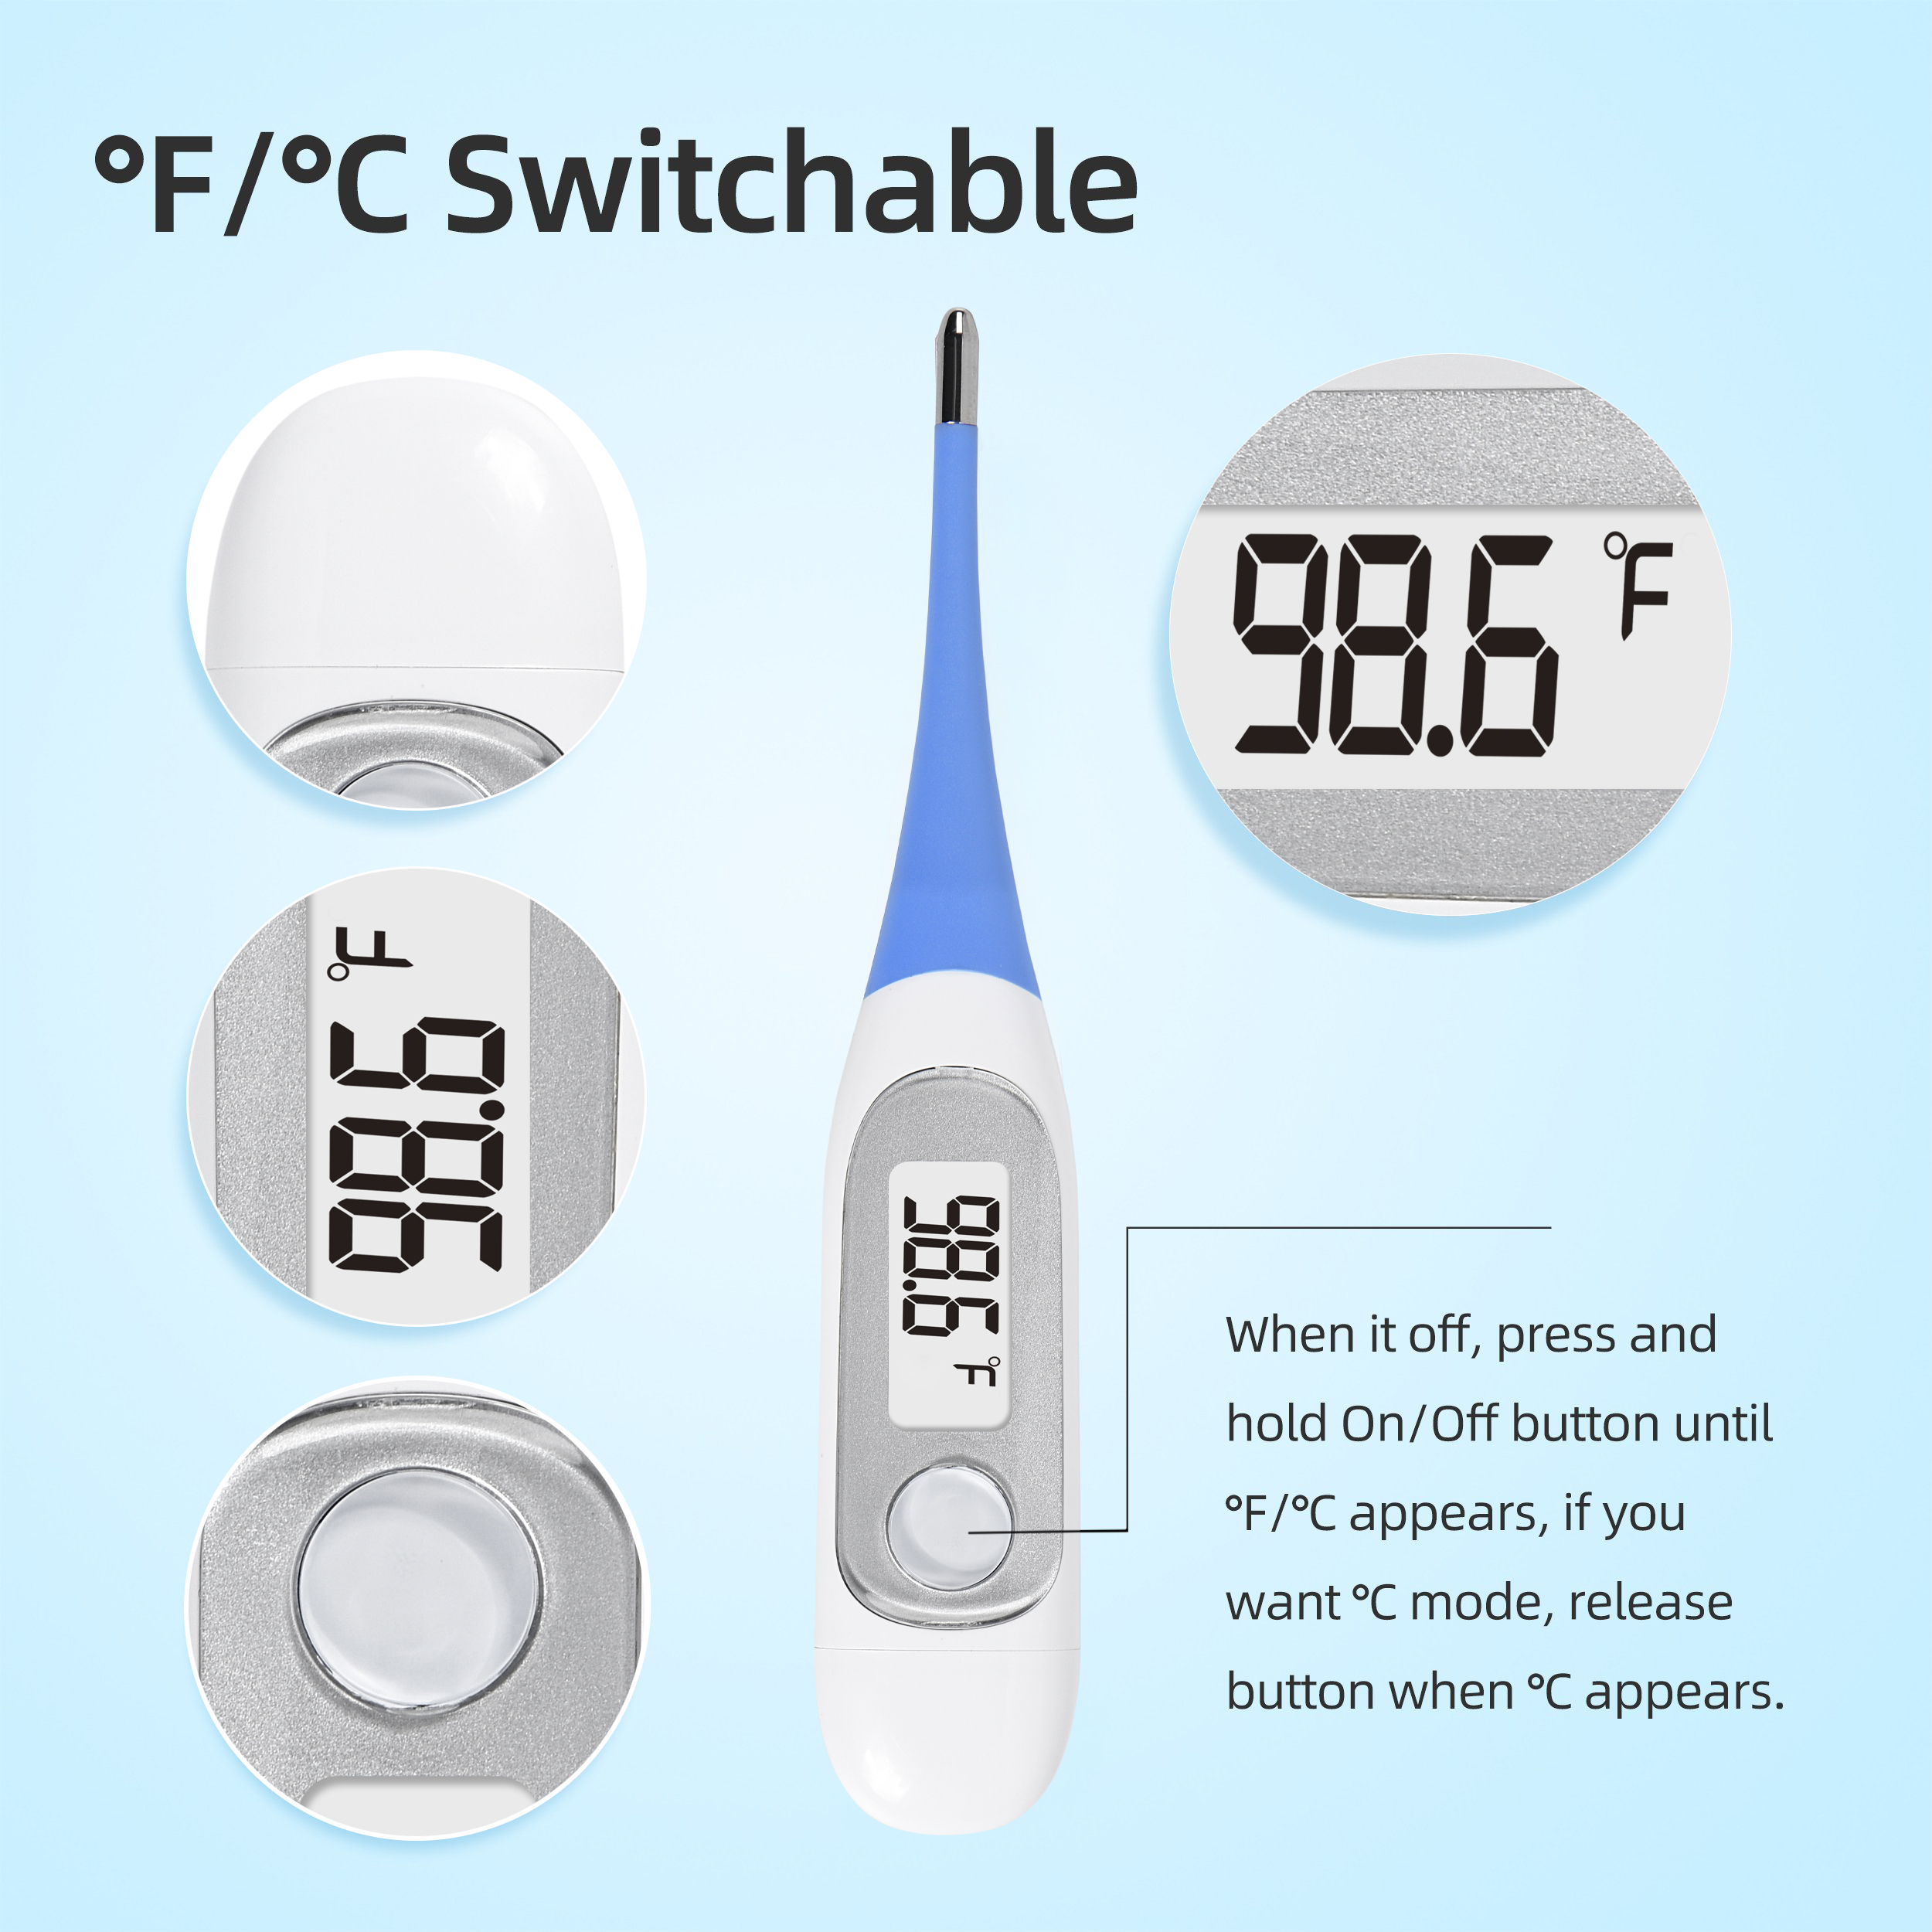 Digital thermometer Celsius atanga Fahrenheit a thlak dan?